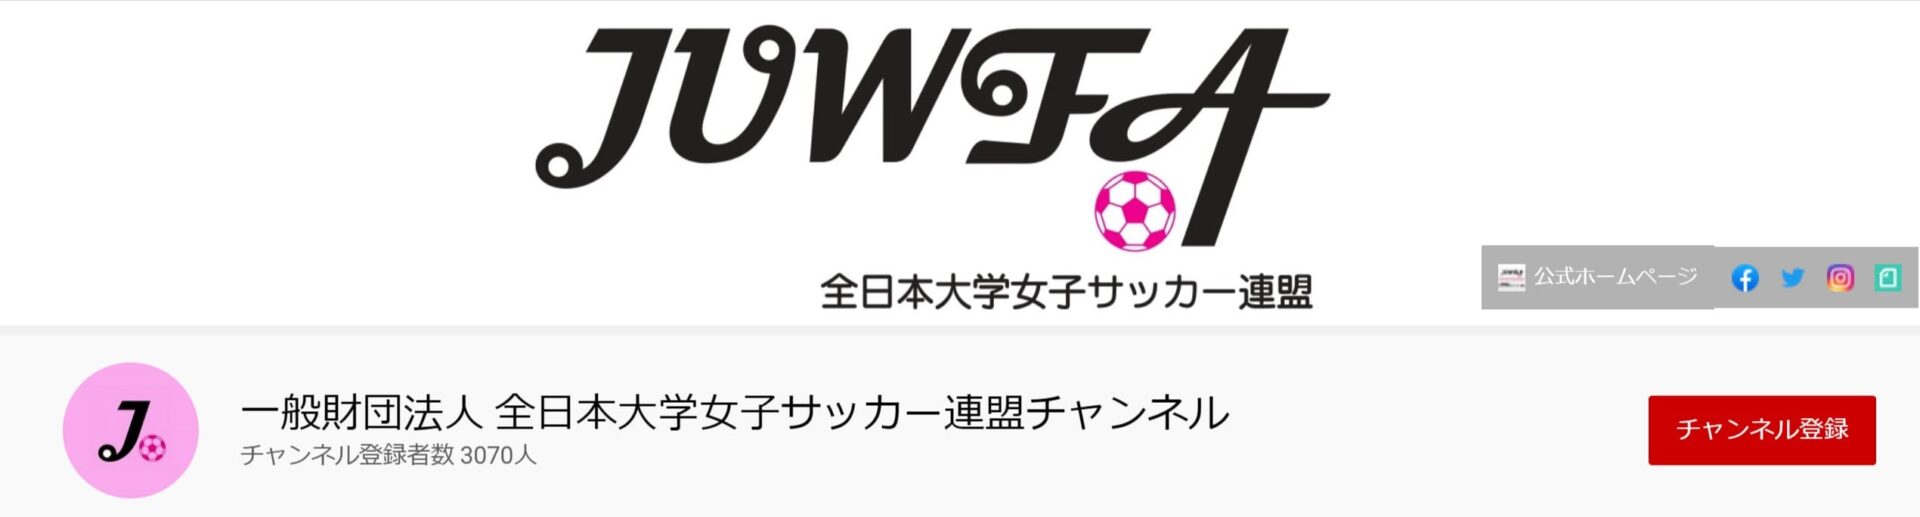 全日本大学女子サッカー連盟チャンネル‗公式YouTube (1)